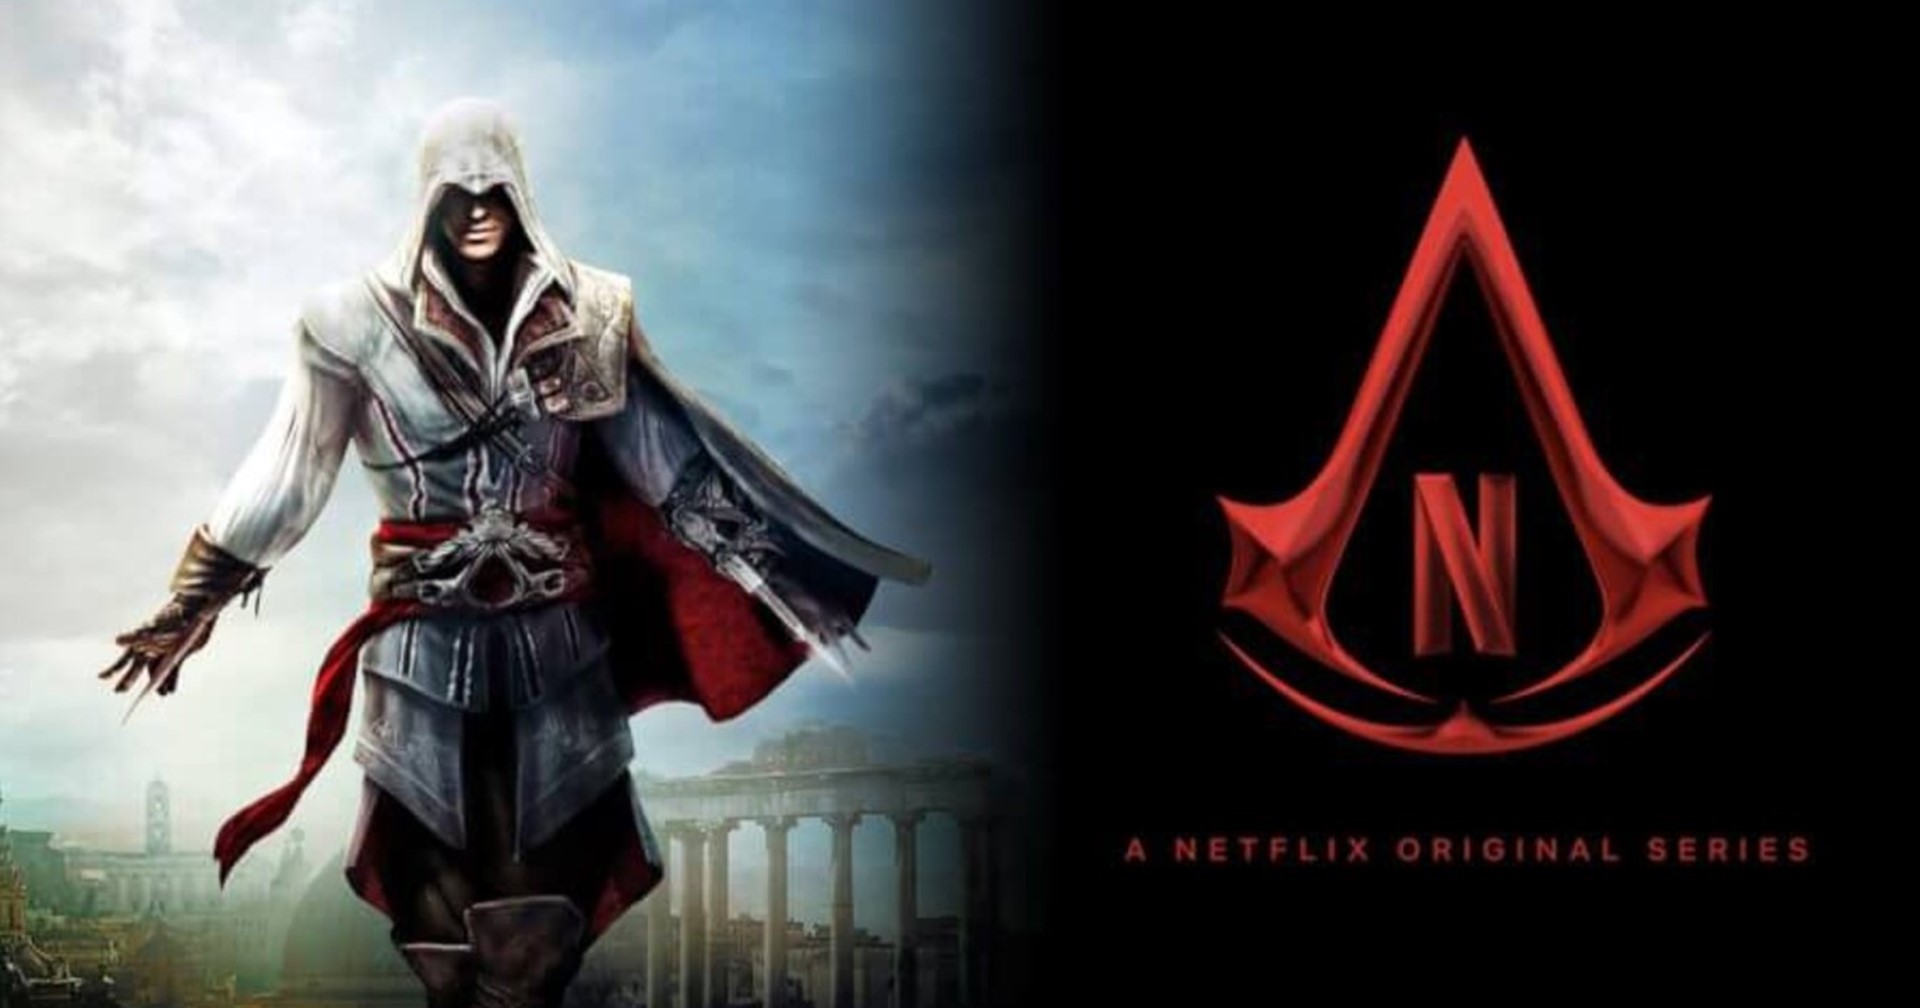 ผู้สร้างซีรีส์ Assassin’s Creed ทาง Netflix ถอนตัวเนื่องจากวิสัยทัศน์ไม่ตรงกัน